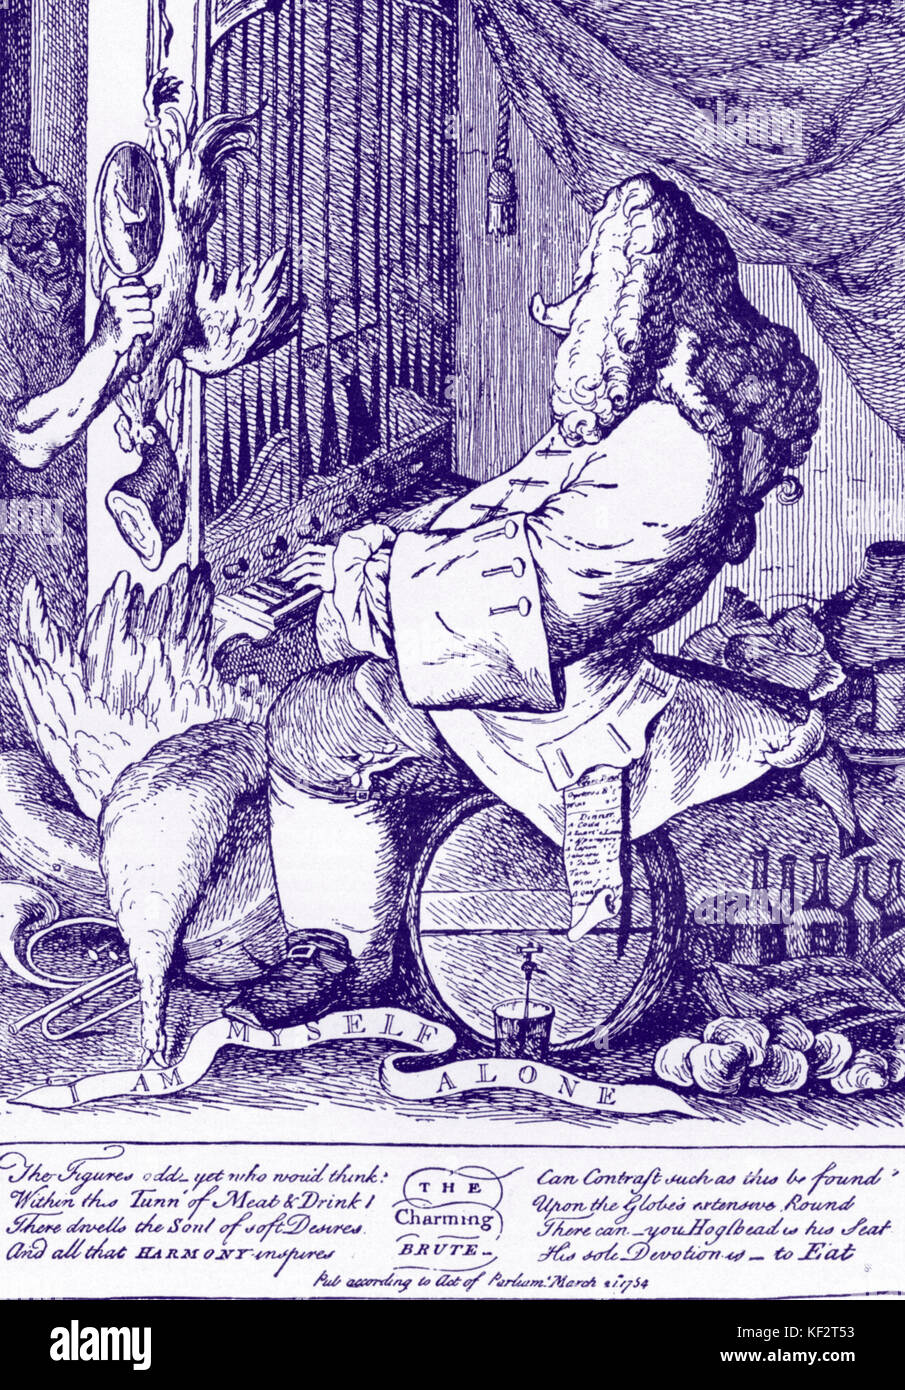 George Frideric Handel. 'El encantador' bruta. El compositor alemán-inglés, 1685-1759. Handel caricatura por Goupy, 1754. Foto de stock